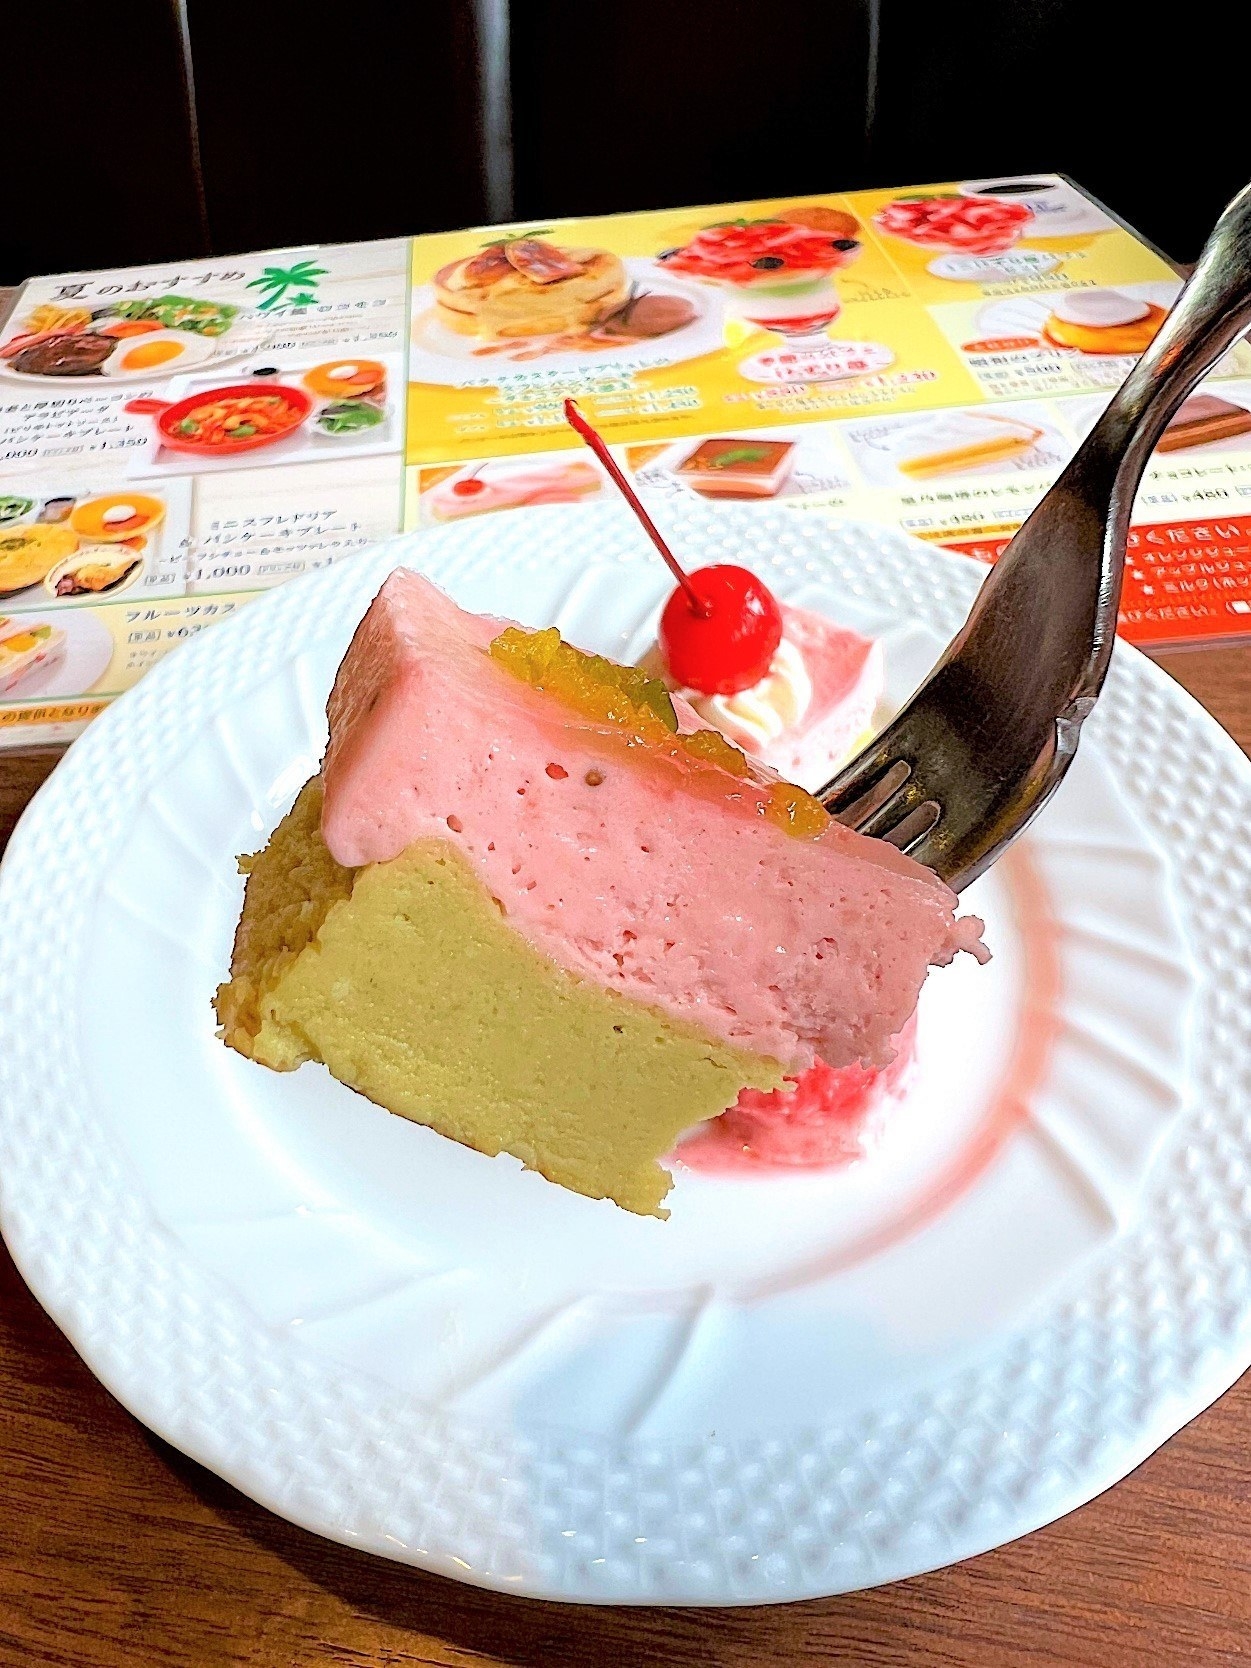 星乃珈琲店のオススメのメニュー「苺とピスタチオのWチーズケーキ」